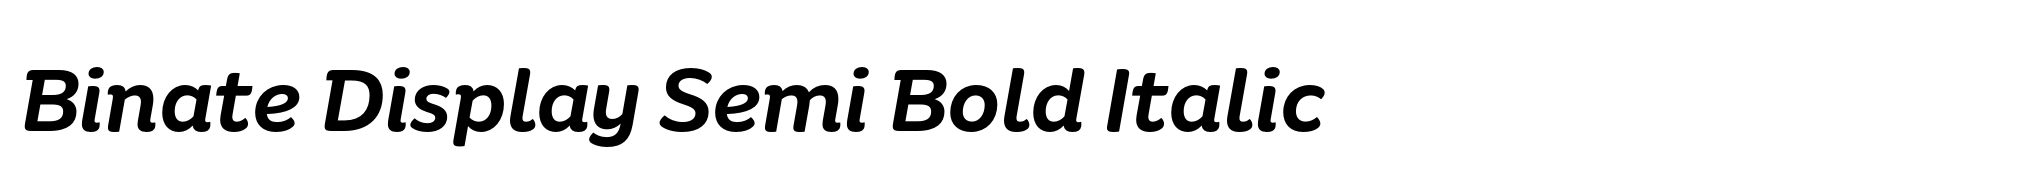 Binate Display Semi Bold Italic image